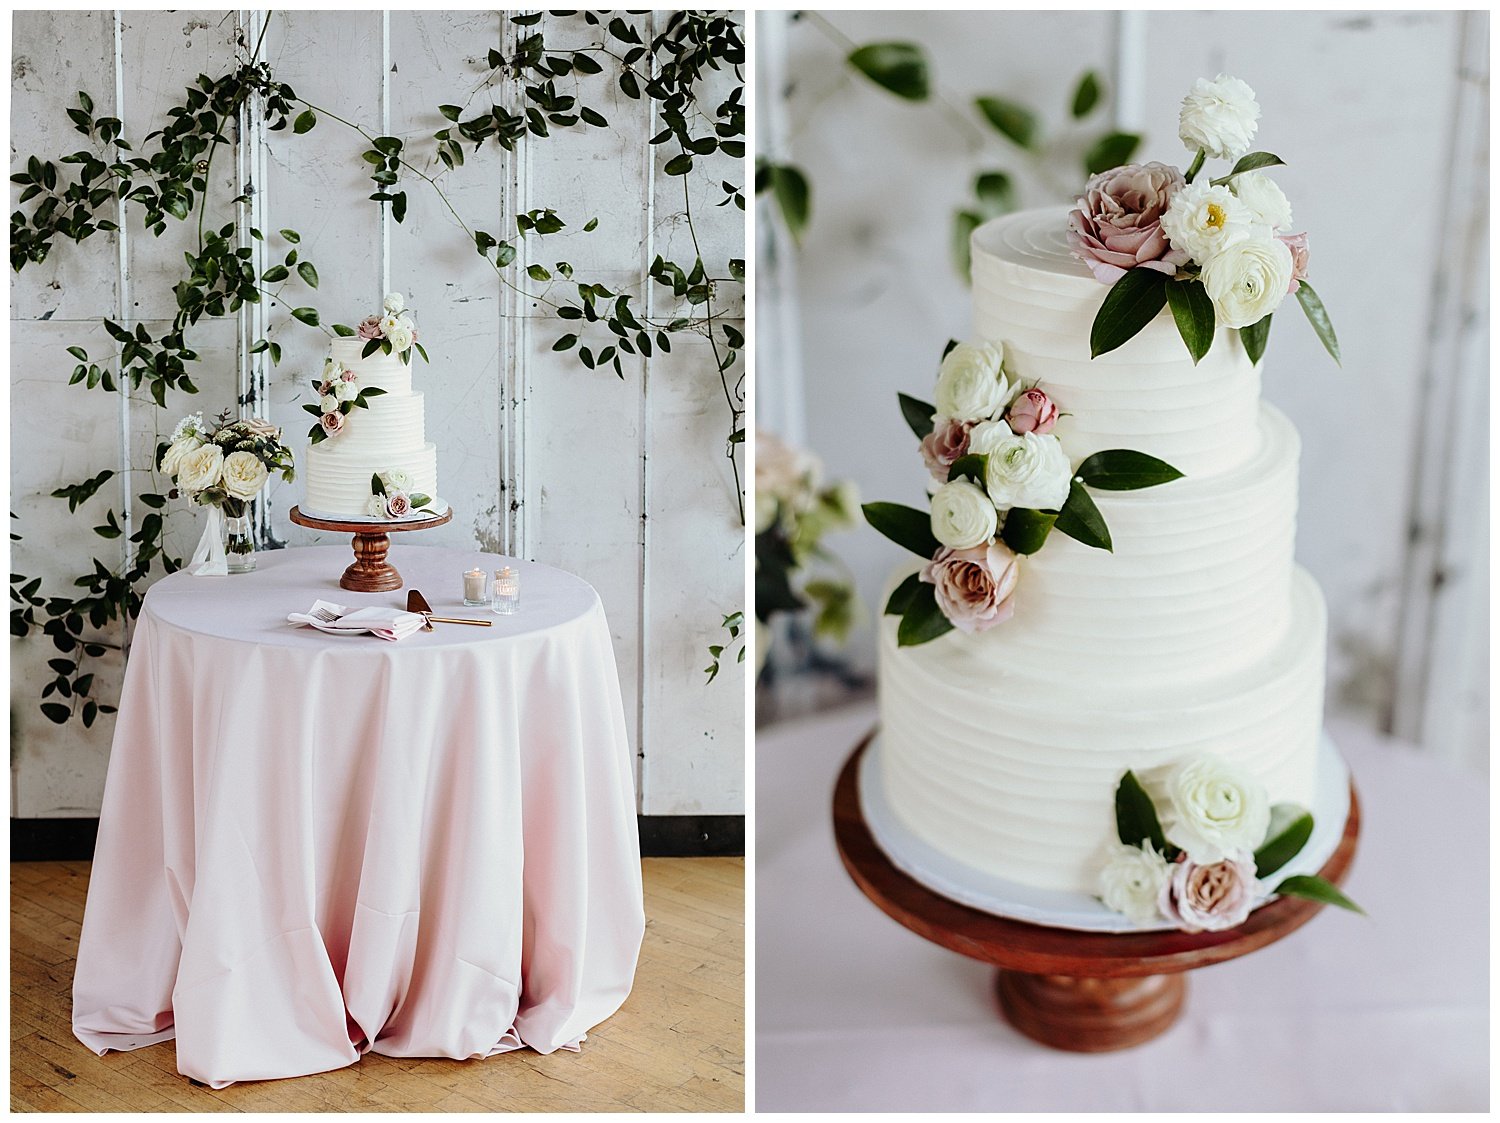 elegant wedding cake with flowers